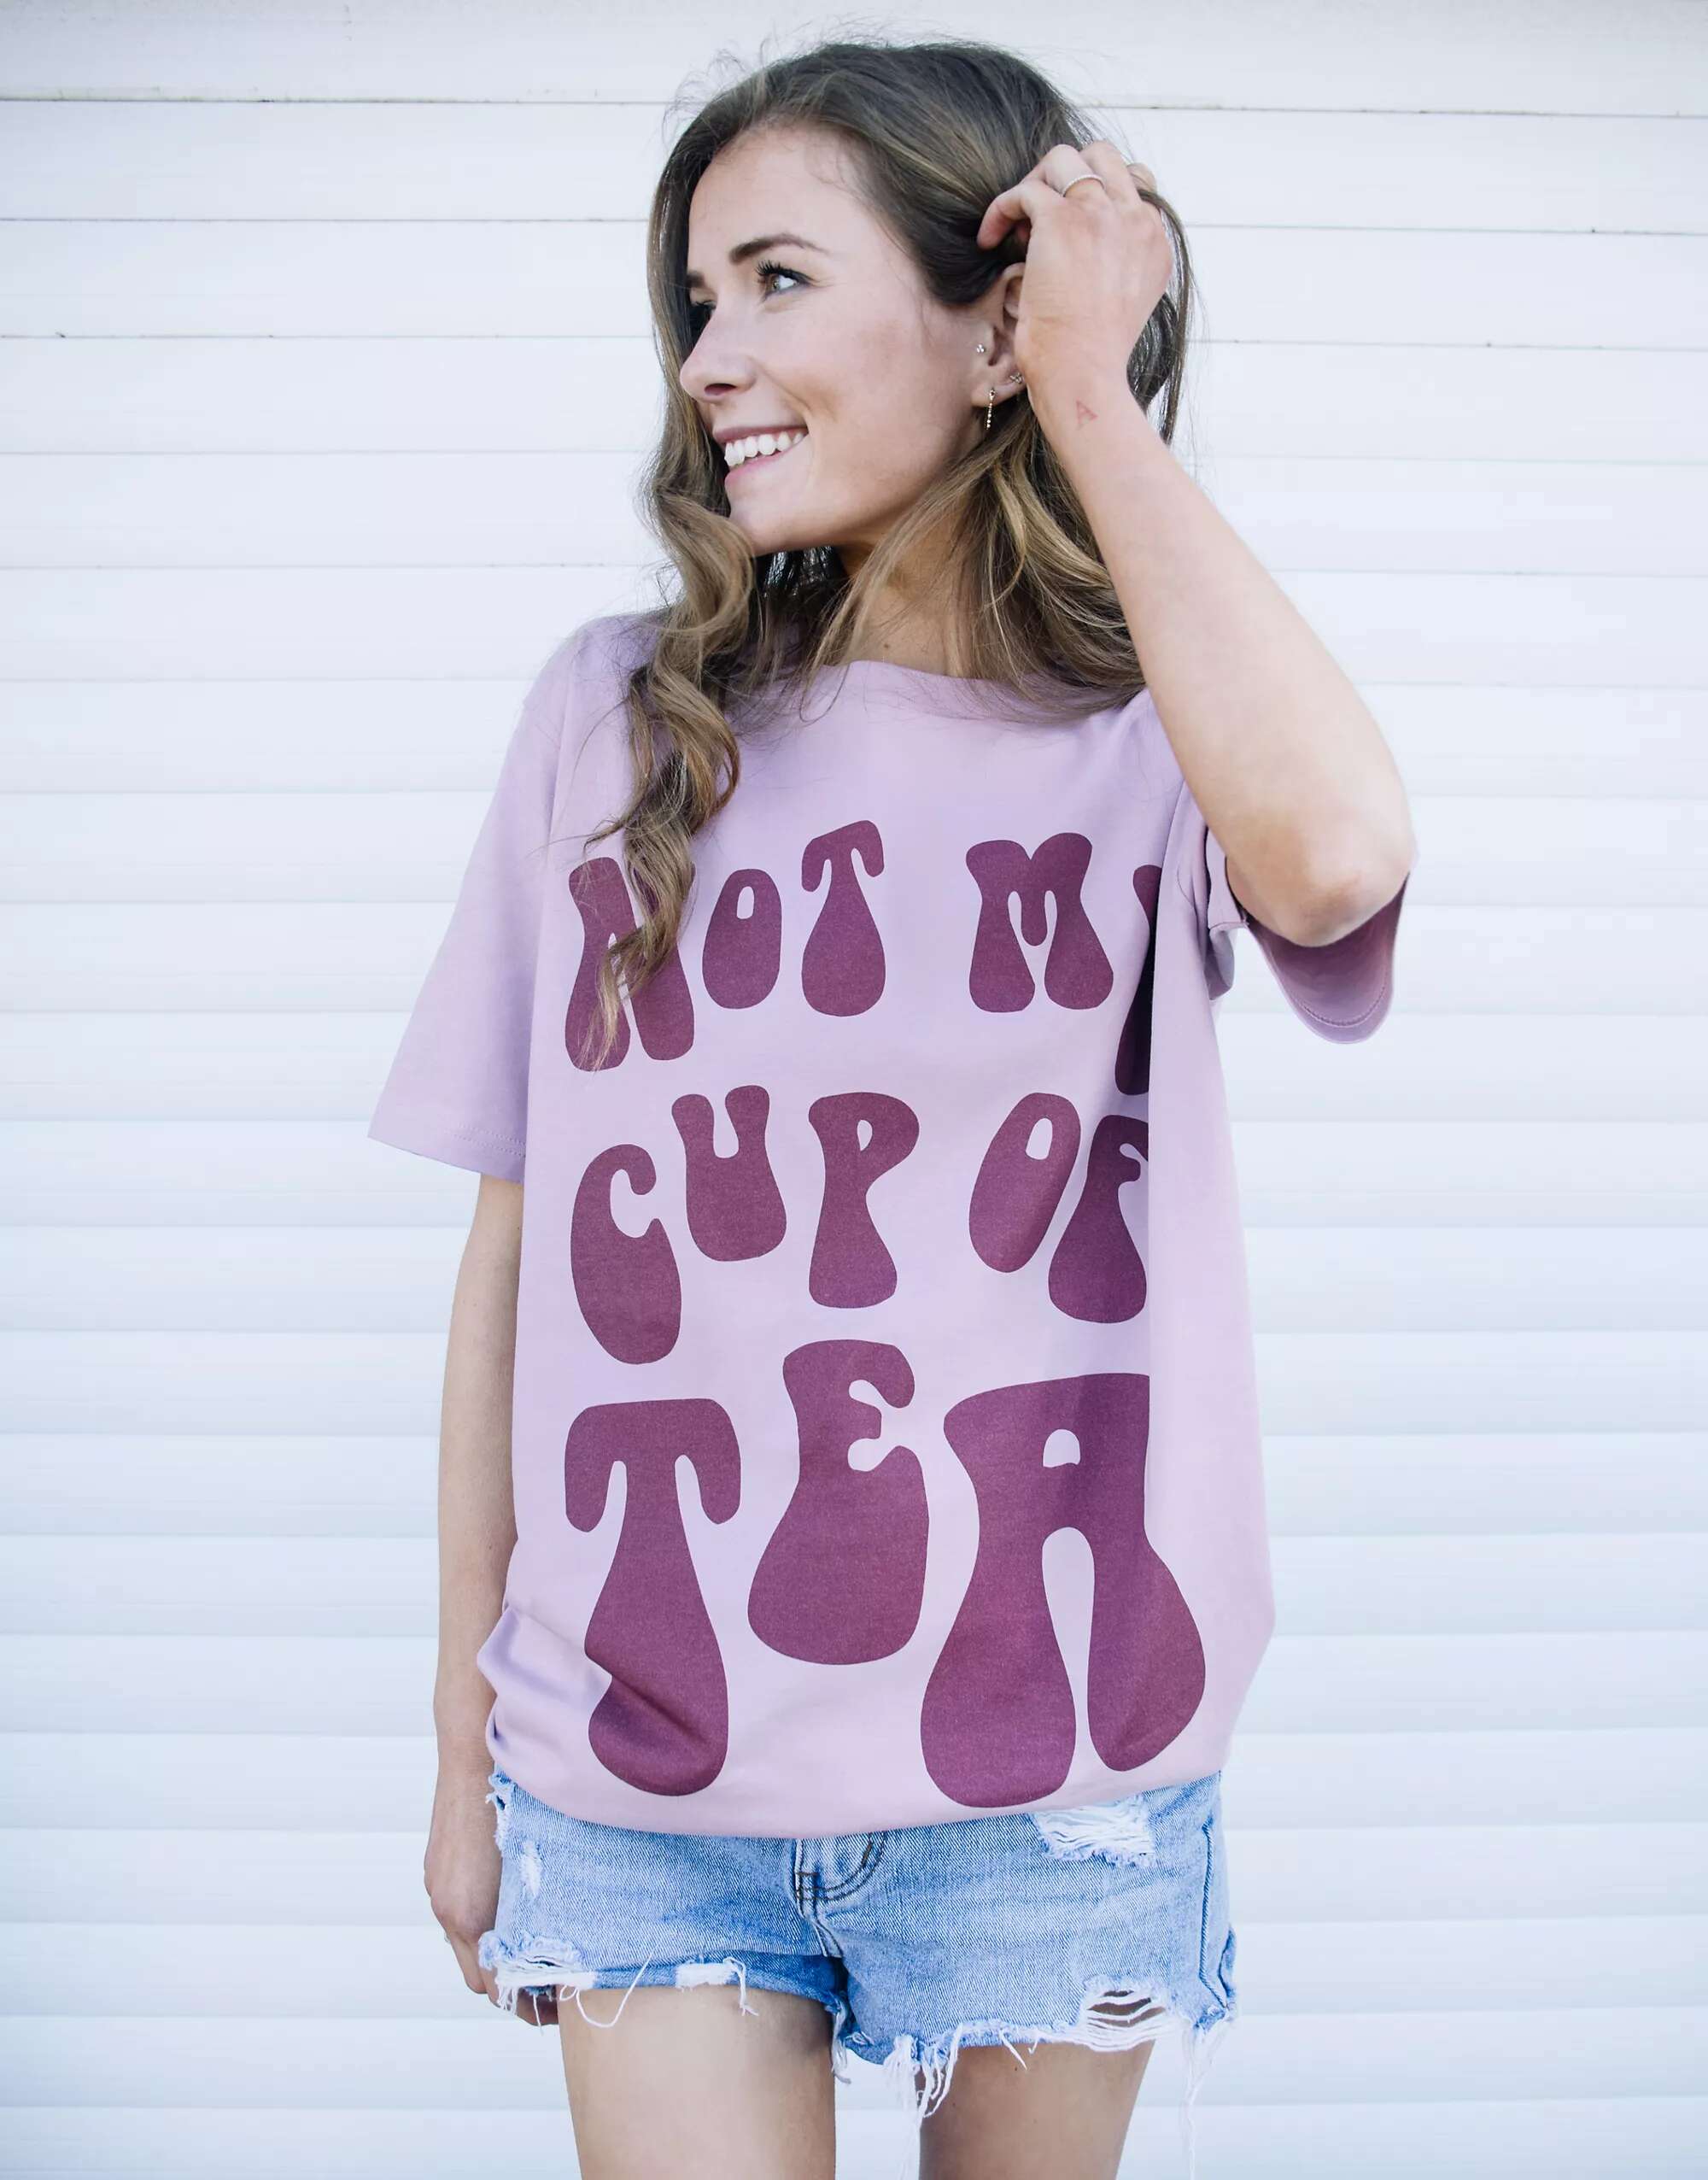 фиолетовая футболка унисекс с надписью завтрак в постели batch1 Фиолетовая футболка унисекс с надписью «Batch1 not my cup of tea»